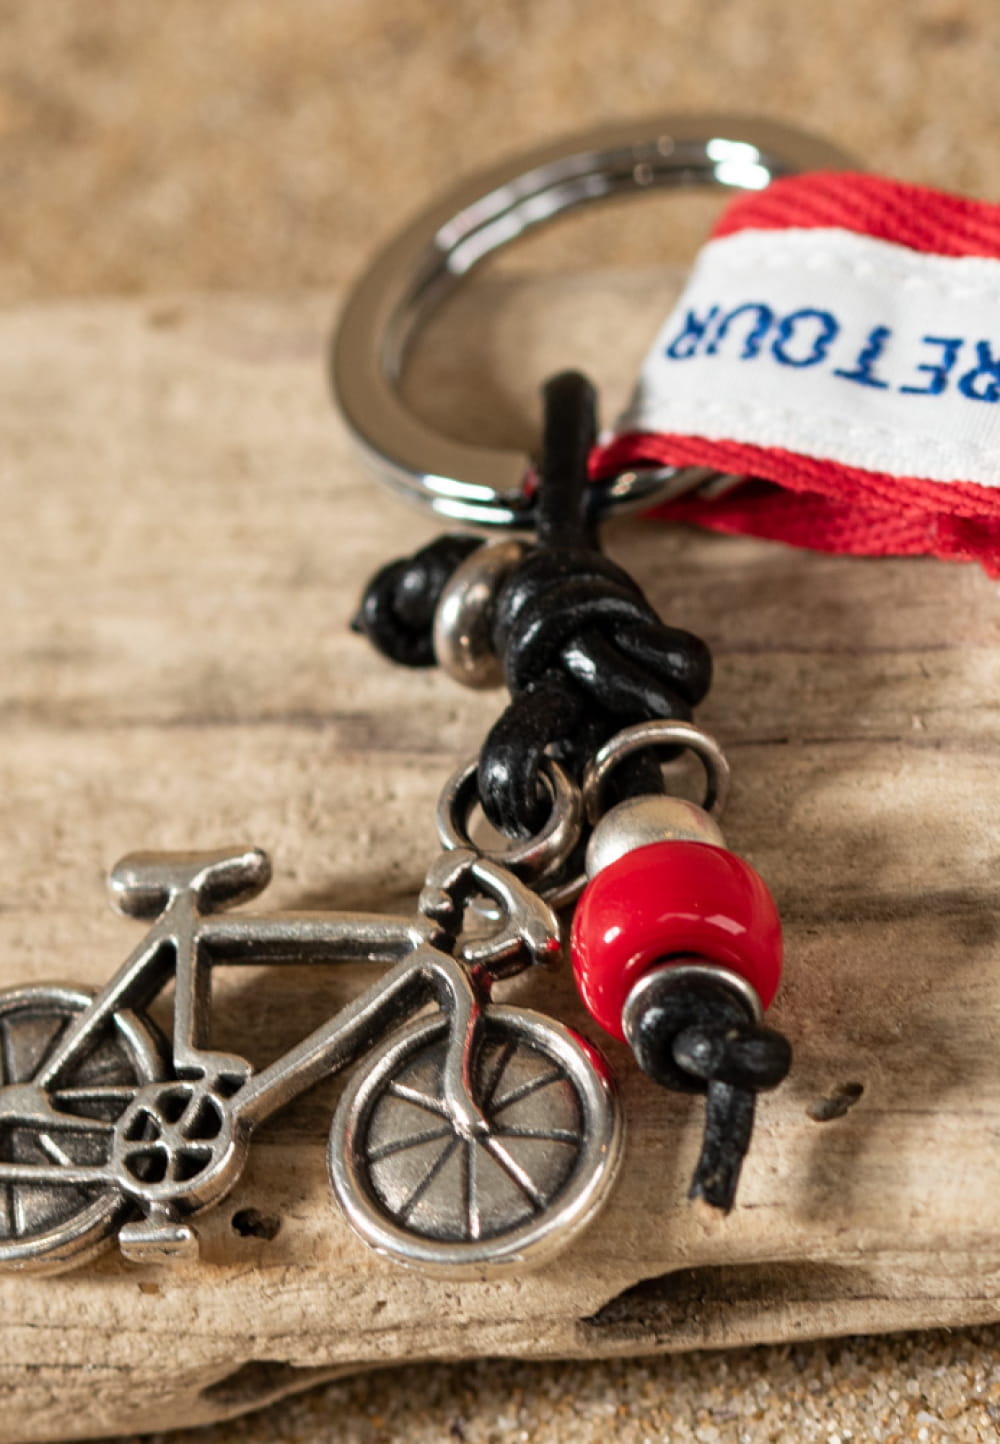 Porte-clefs Vélo argenté, rouge et noir - Retour de plage